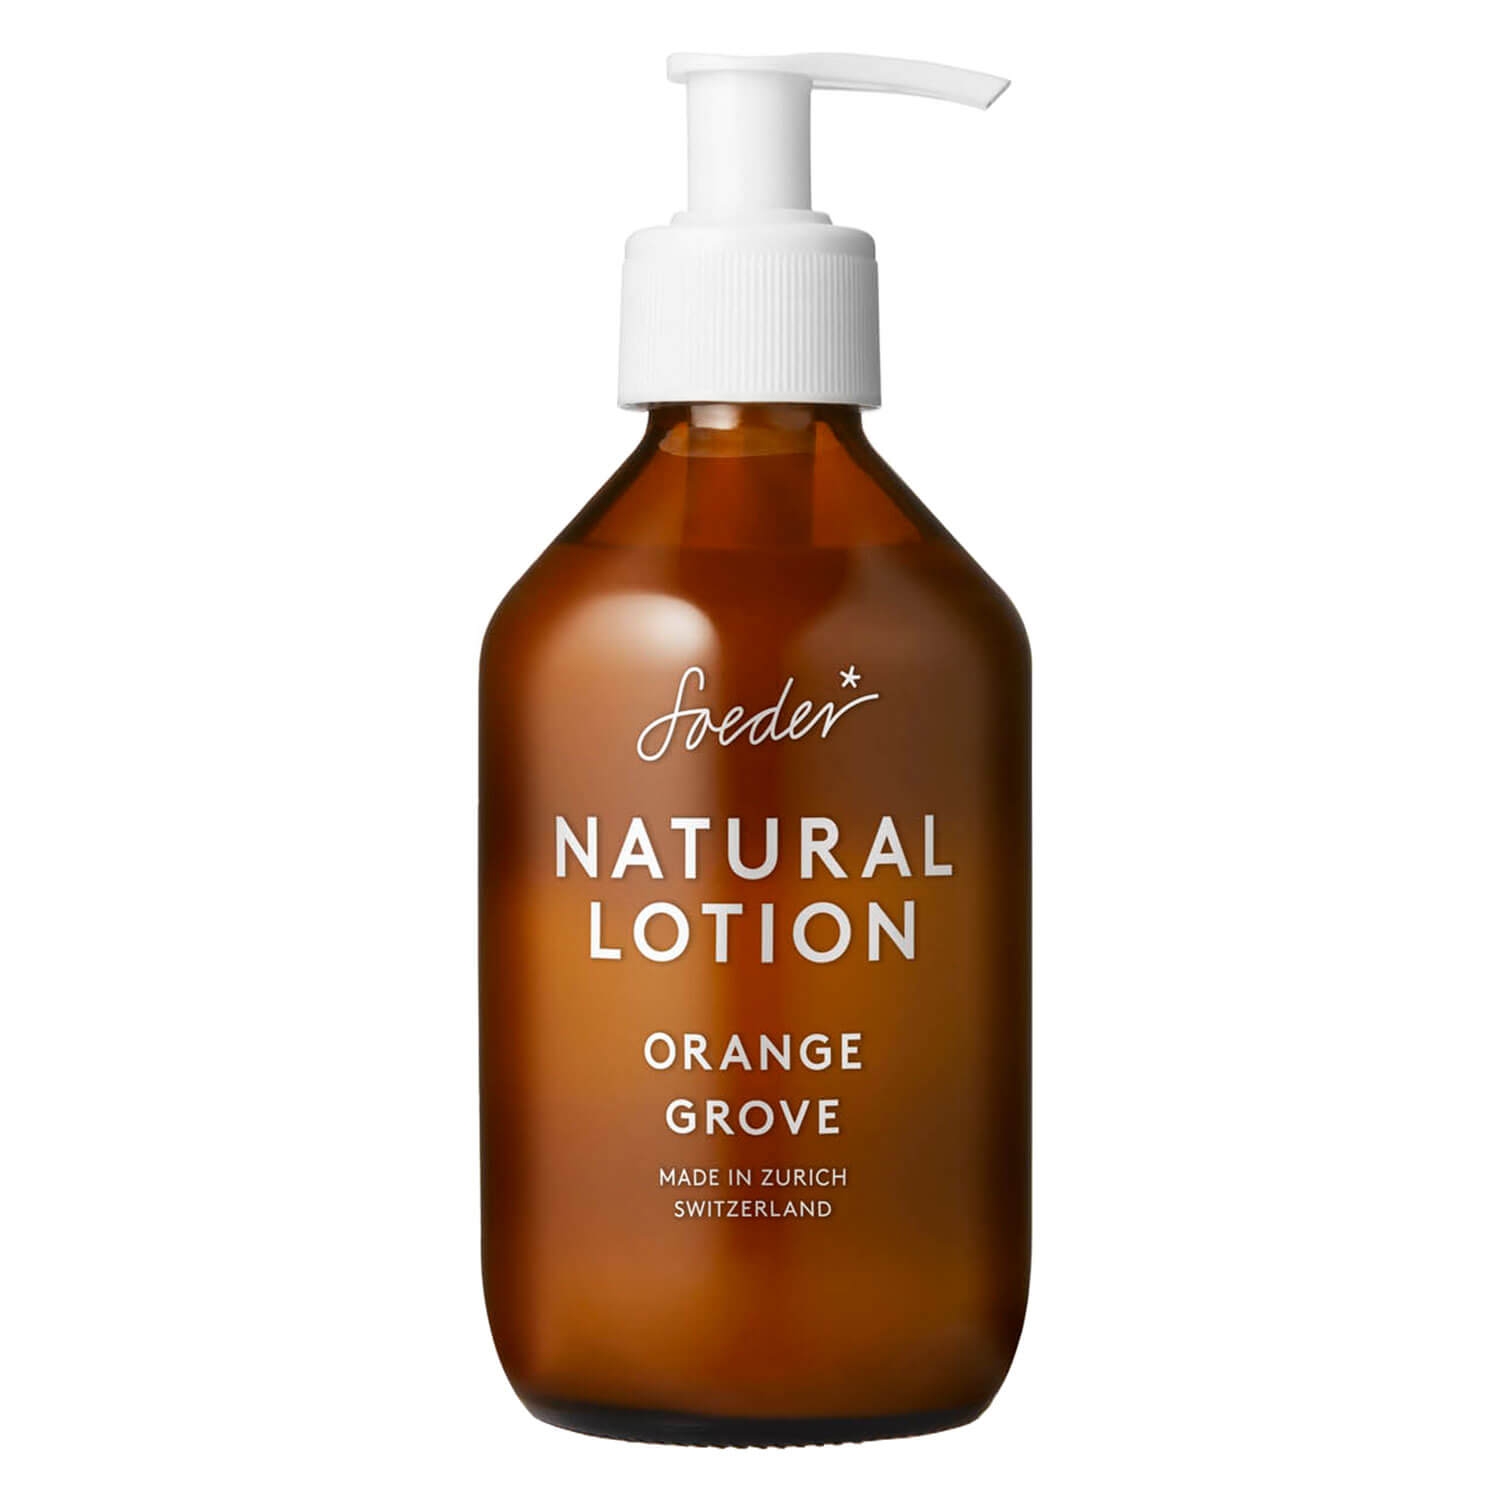 Produktbild von Soeder - Natural Lotion Orange Grove